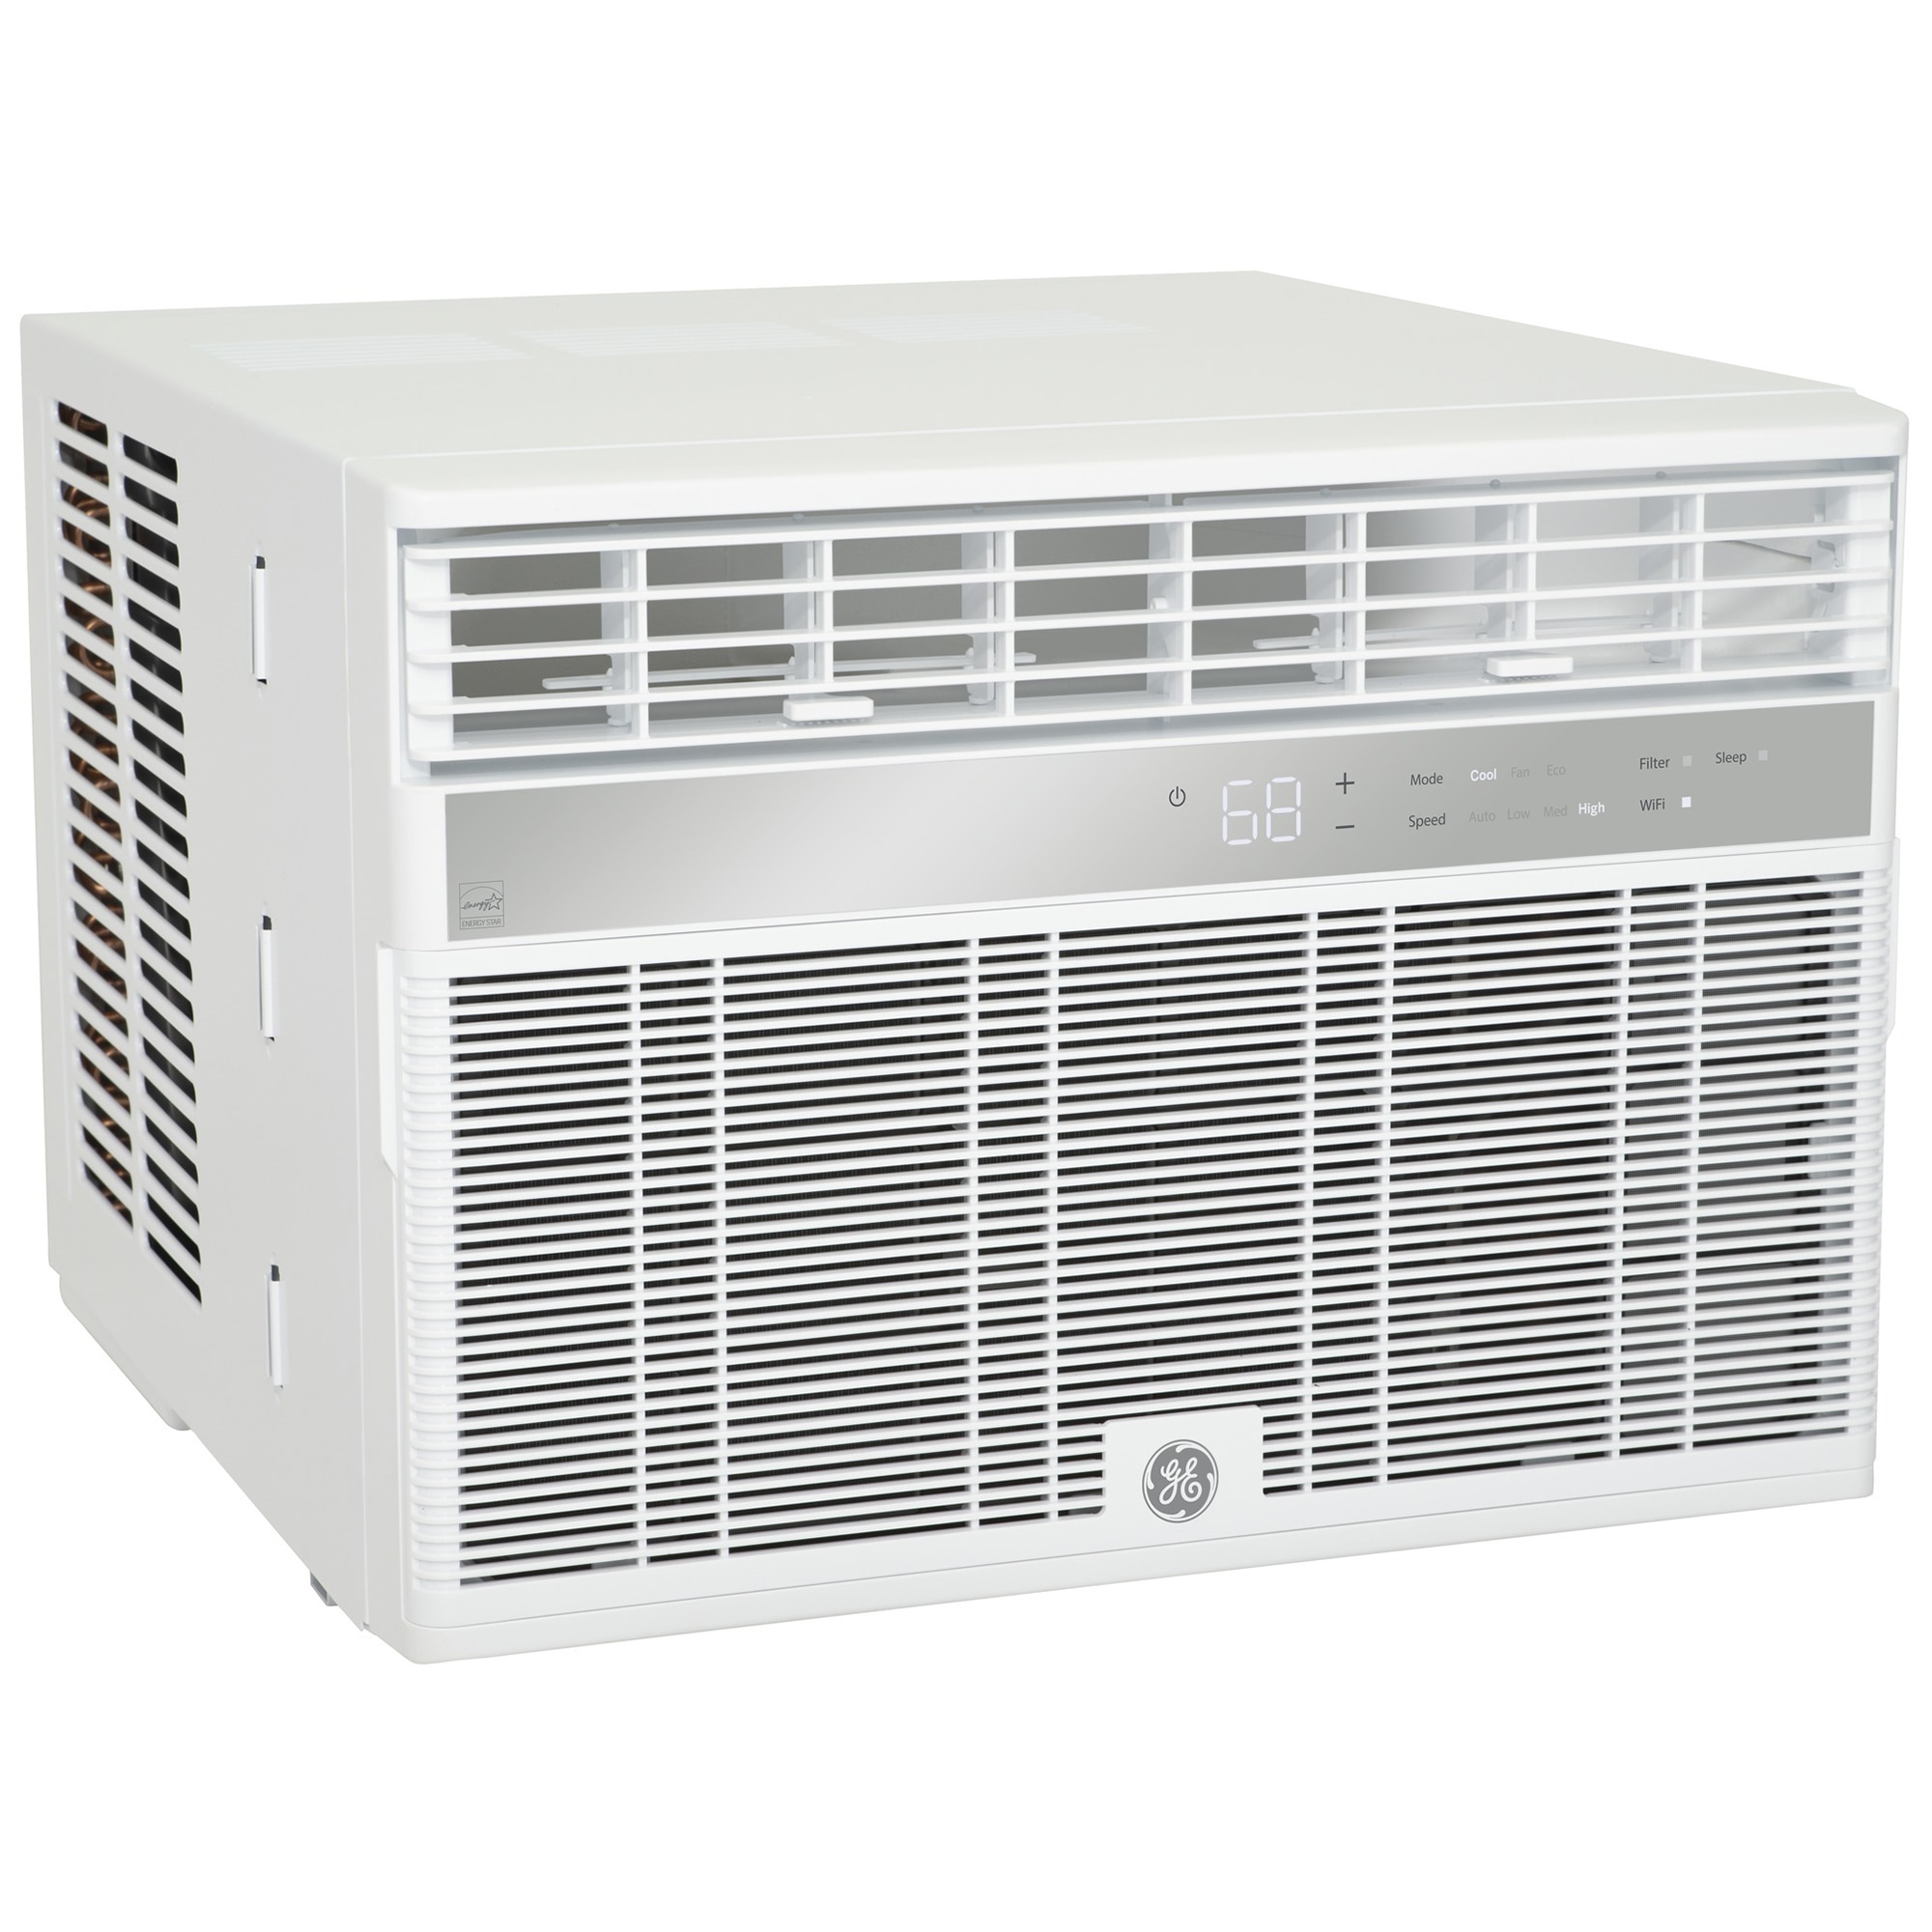 GE 12,000 BTU Window Air Conditioner (AHY12LZ)